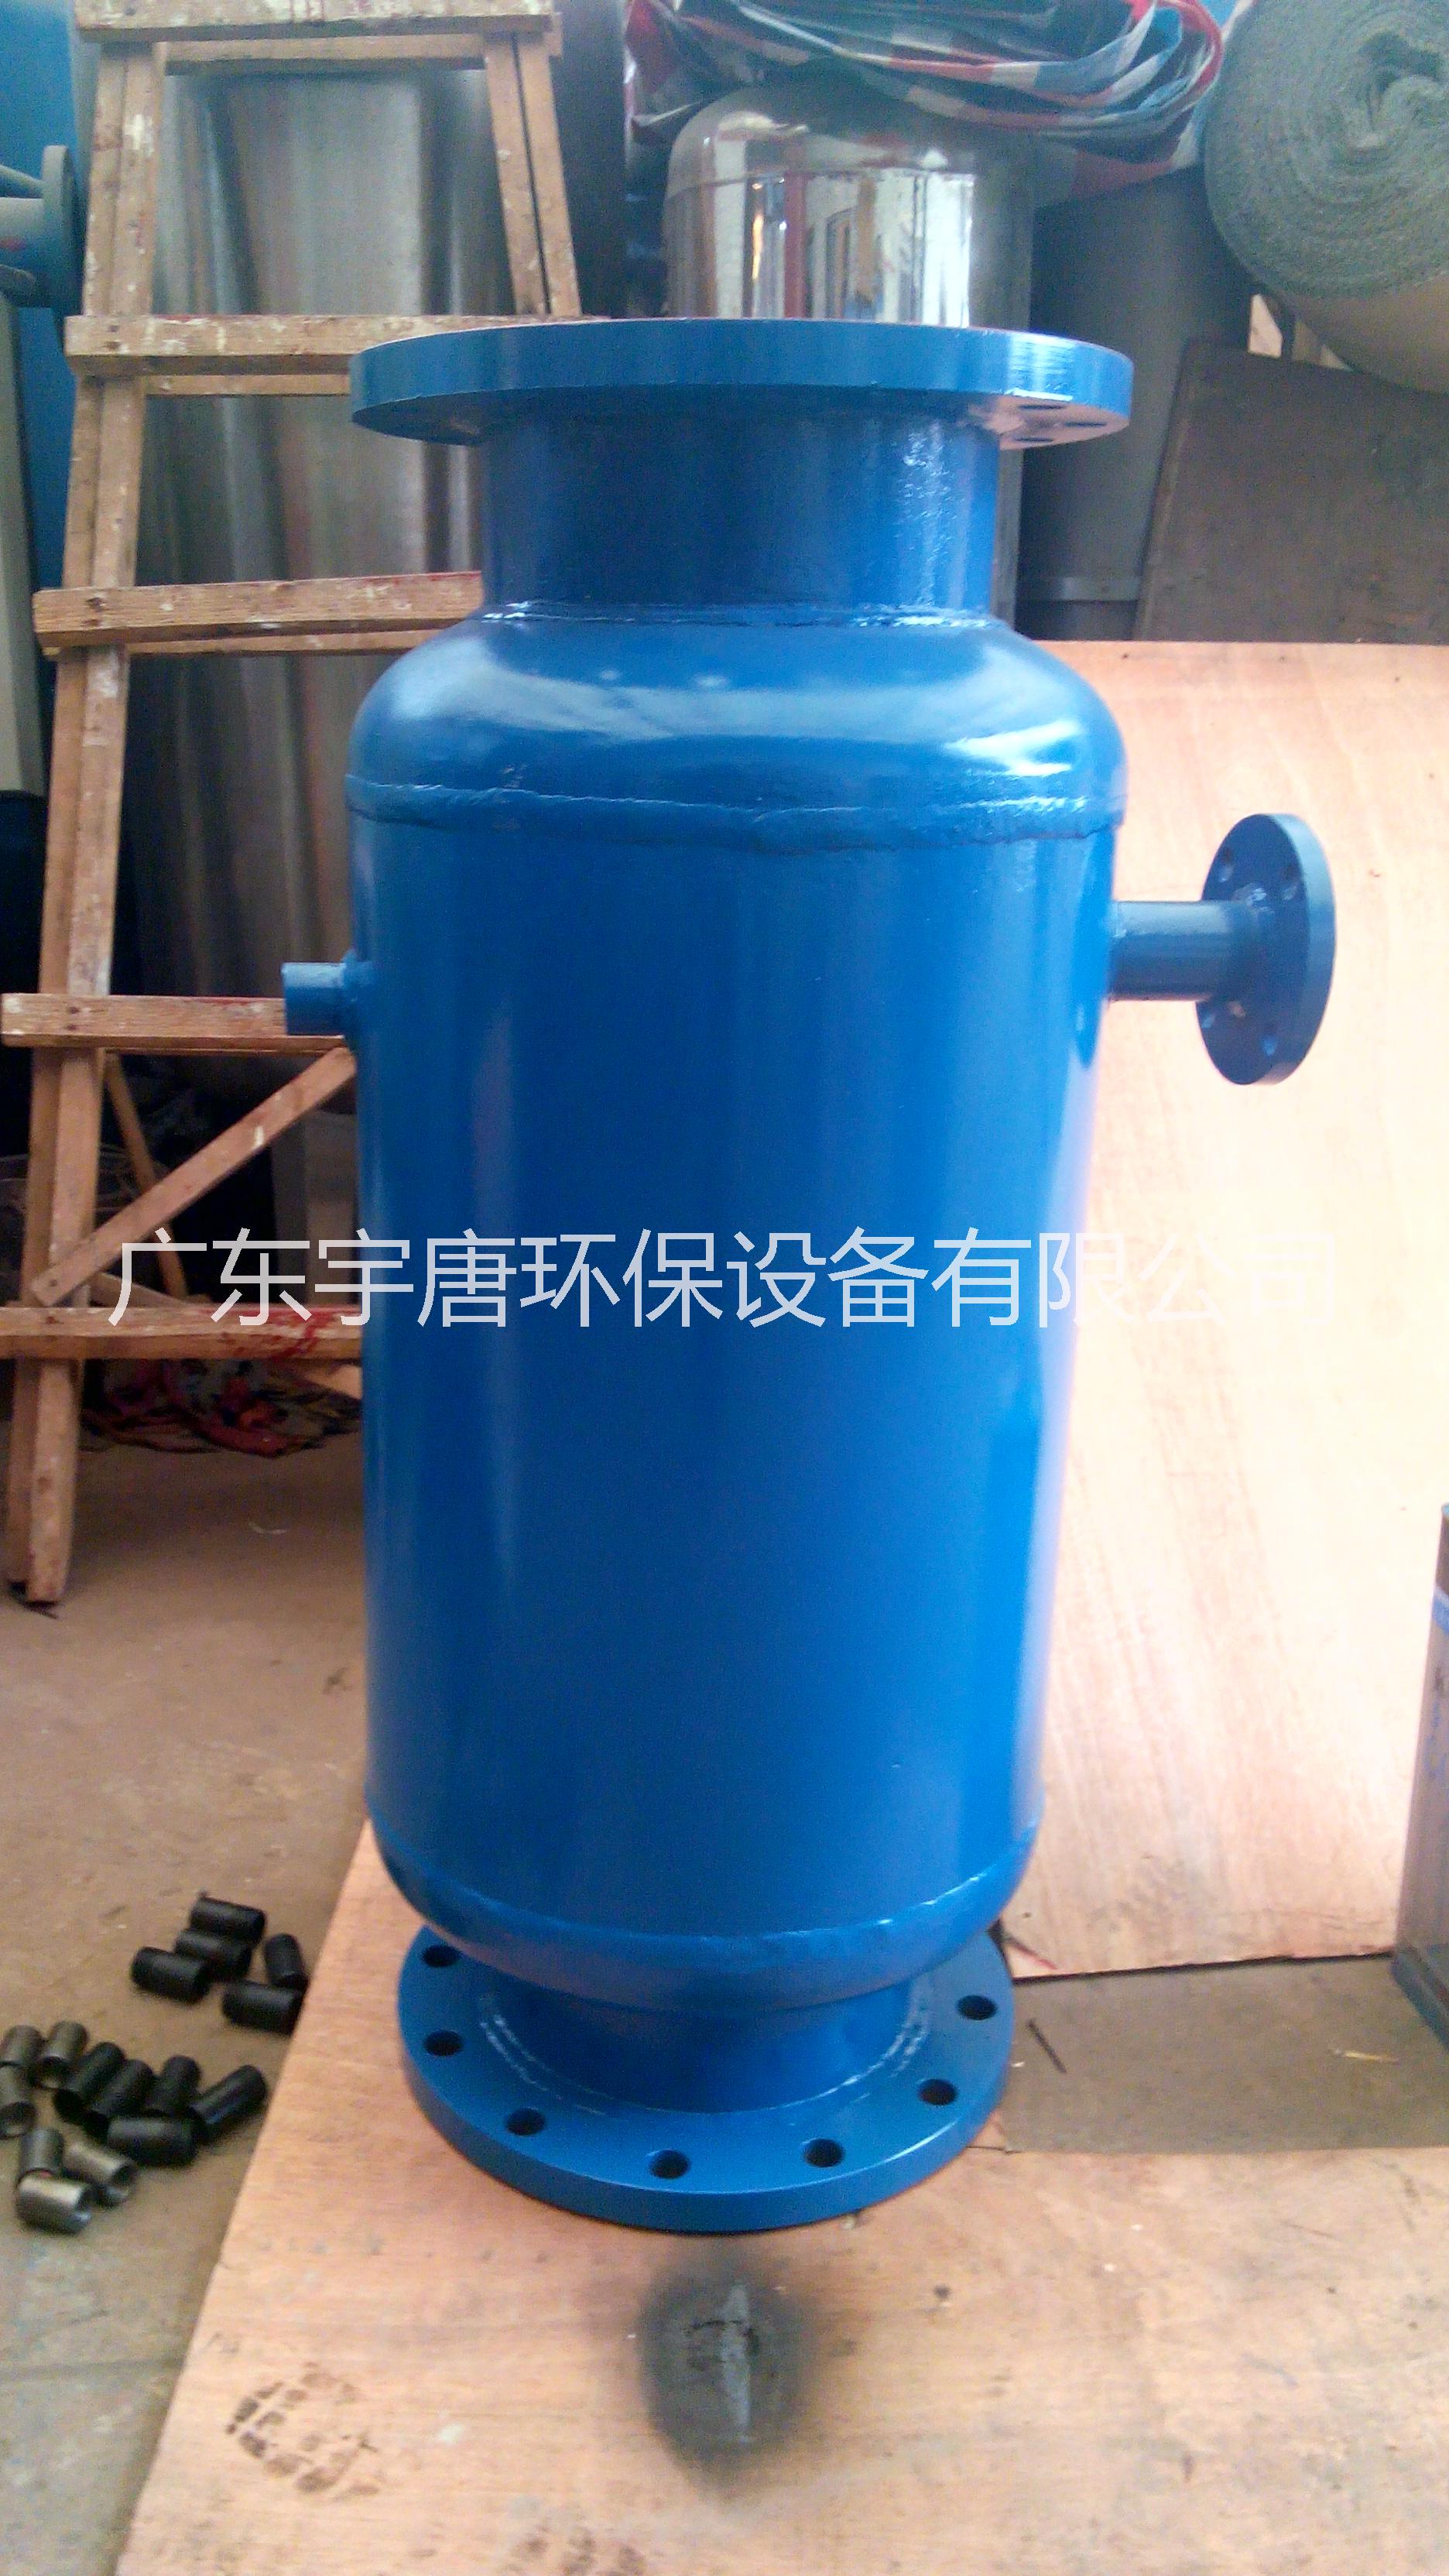 广州市冷凝器胶球自动在线清洗装置厂家冷凝器胶球自动在线清洗装置生厂厂家直销